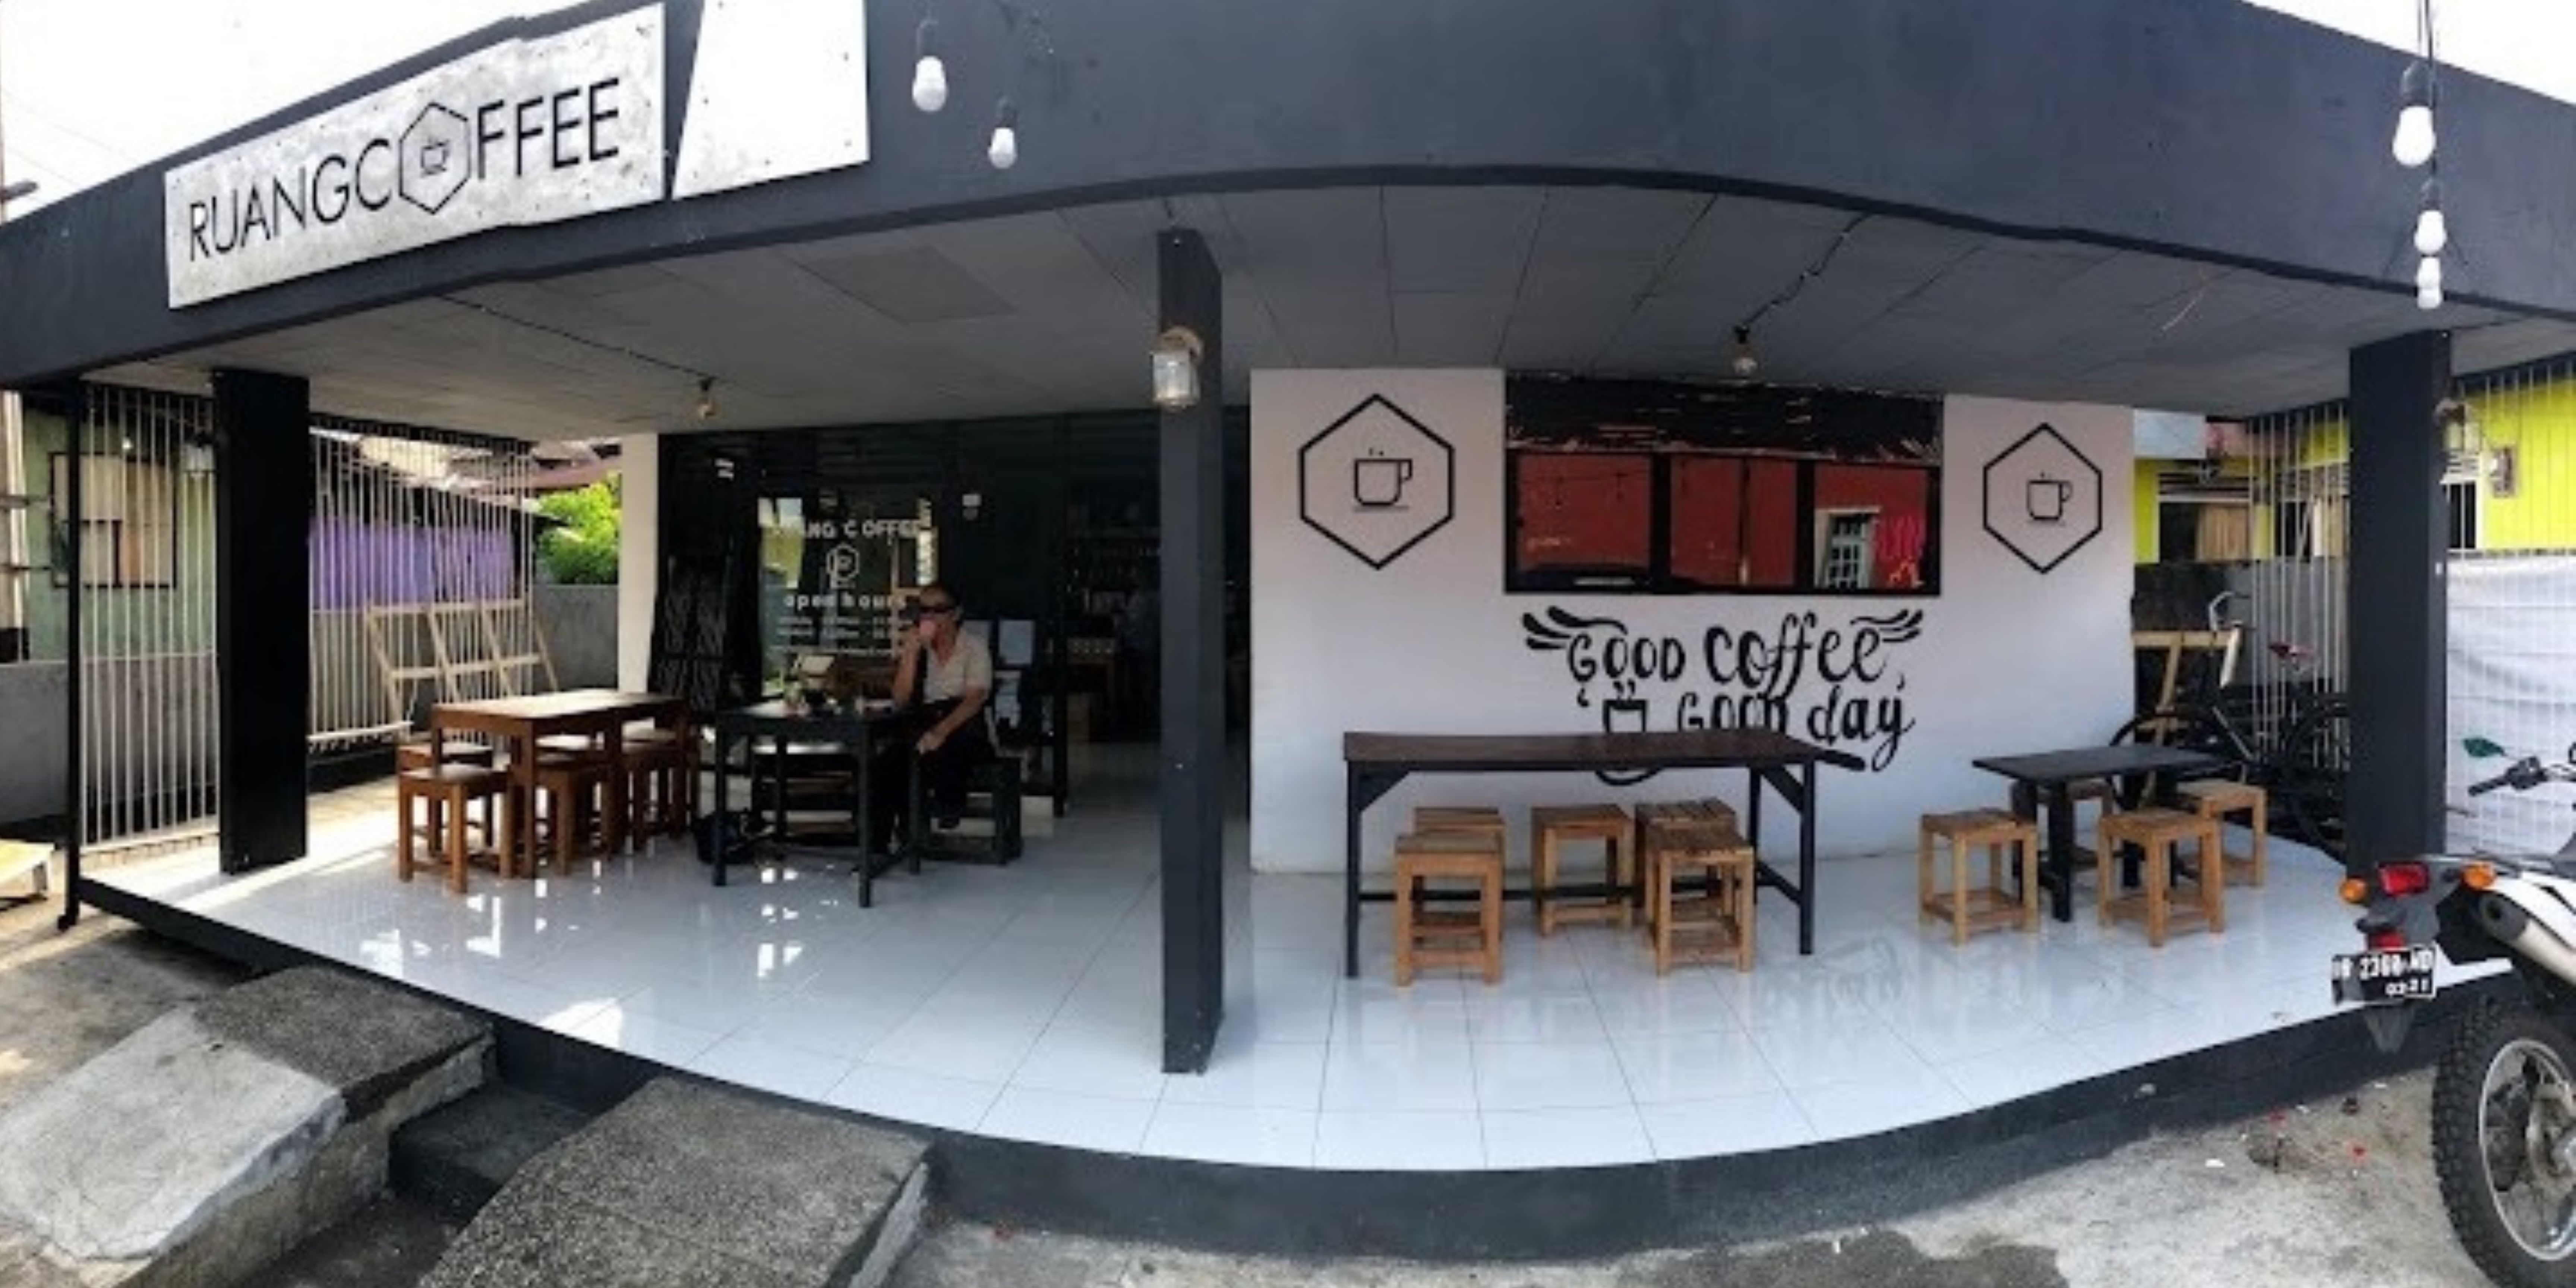 Ruang coffee salah satu tempat terbaik menghabiskan waktu di Ternate